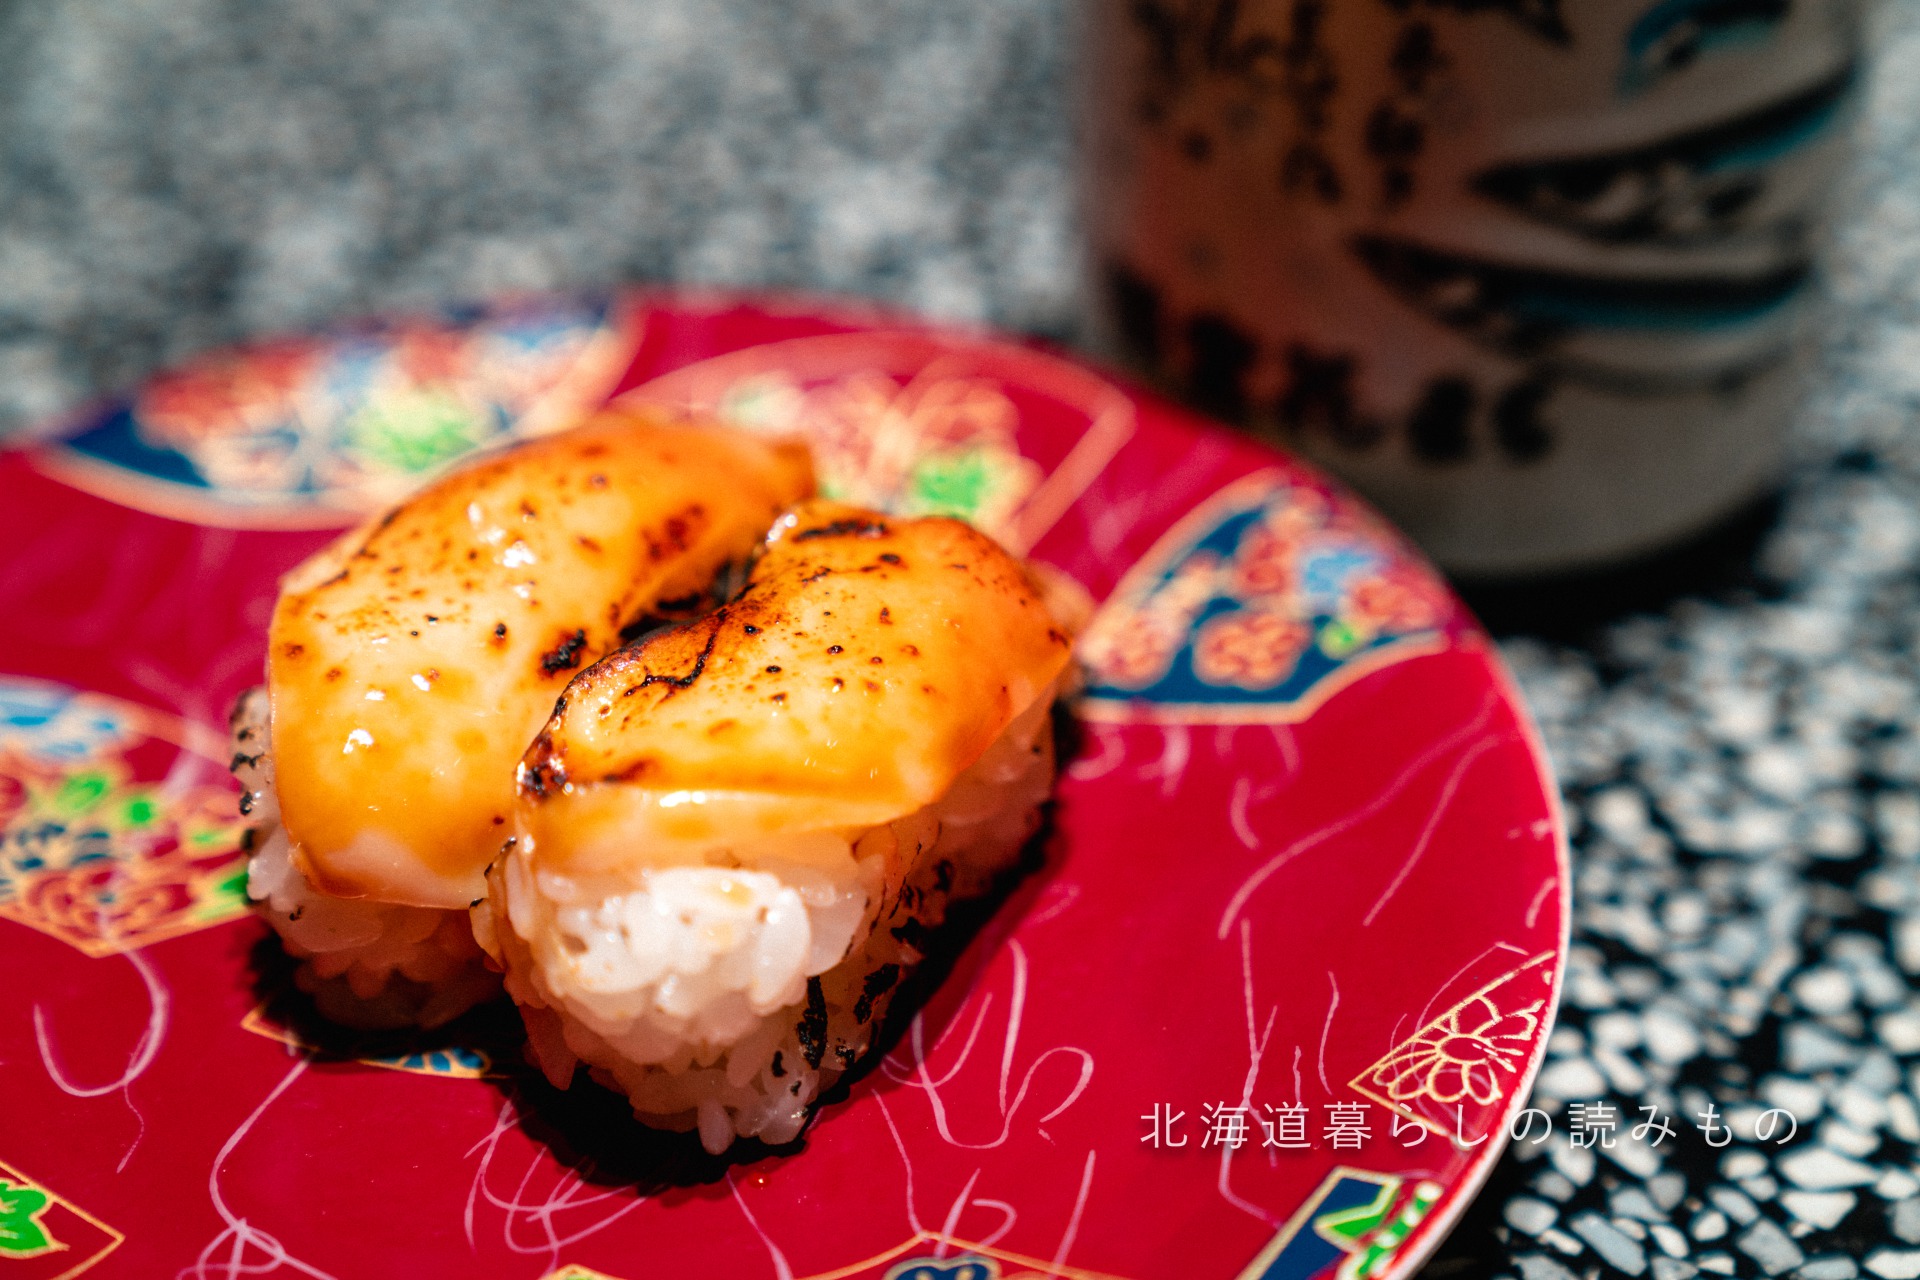 回転寿司 根室花まるのメニュー「炙りほっき 焦し醤油握り」の写真